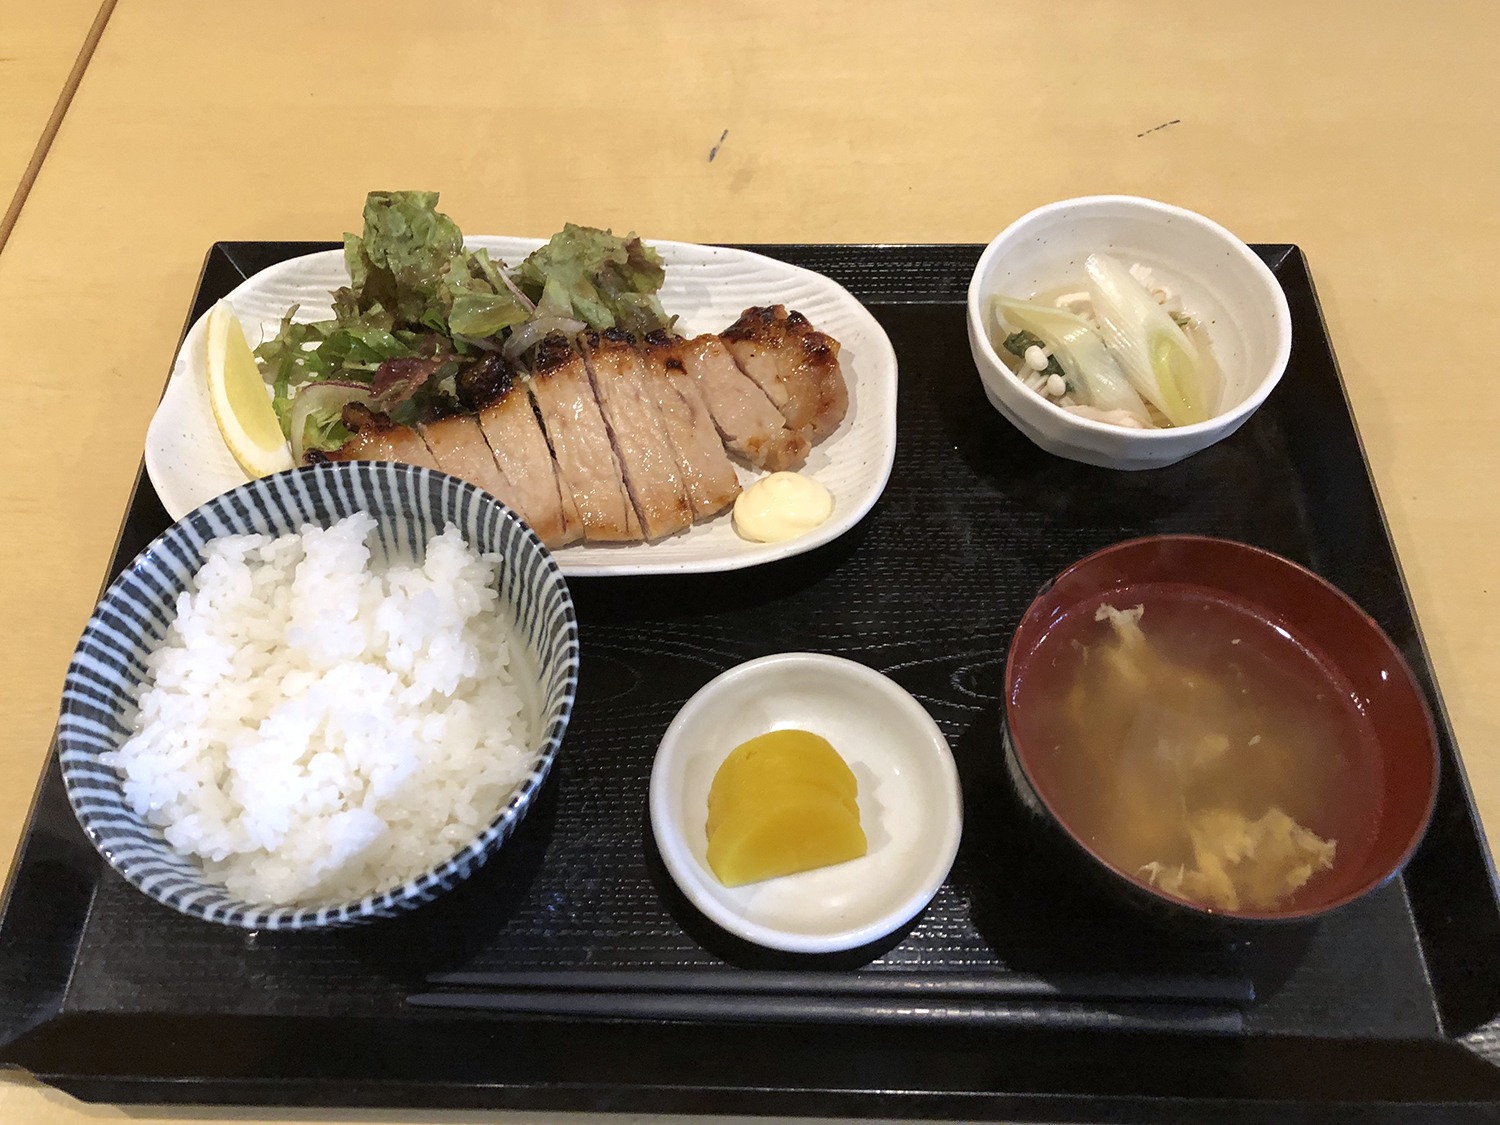 豚ロース西京焼き定食700円。小鉢と味噌汁が付く。ご飯はおかわり自由。